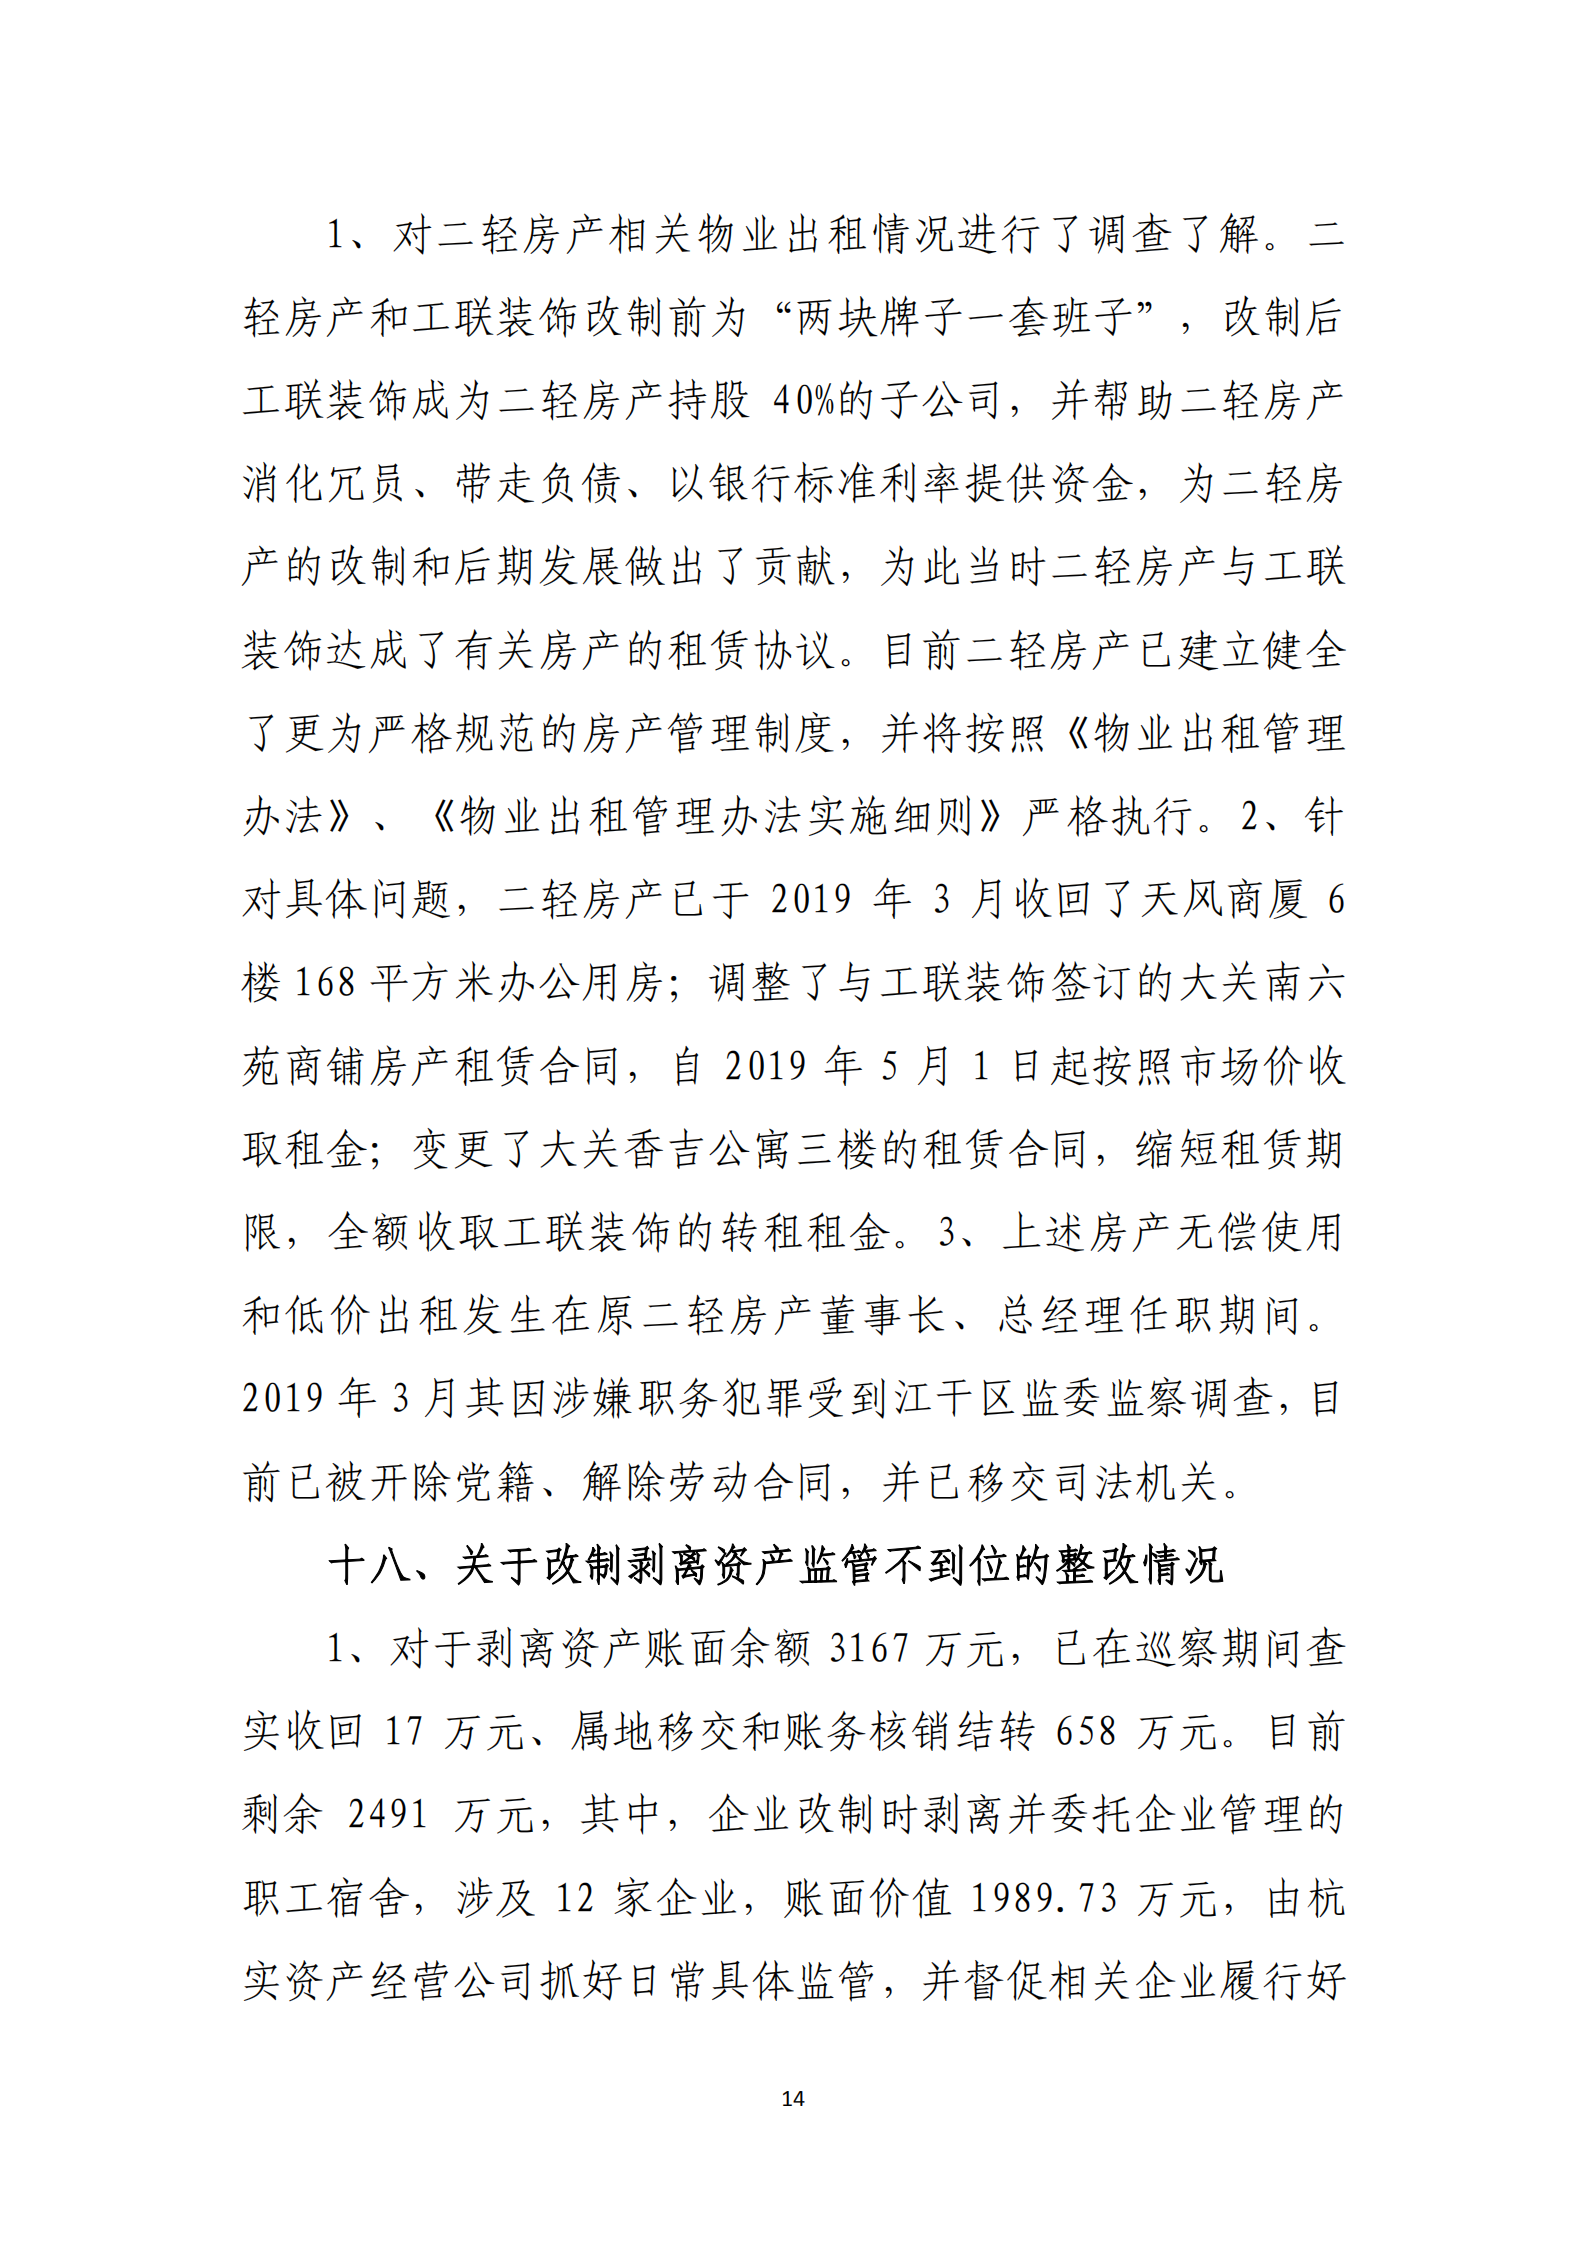 博乐体育网页【中国】有限公司党委关于巡察整改情况的通报_13.png